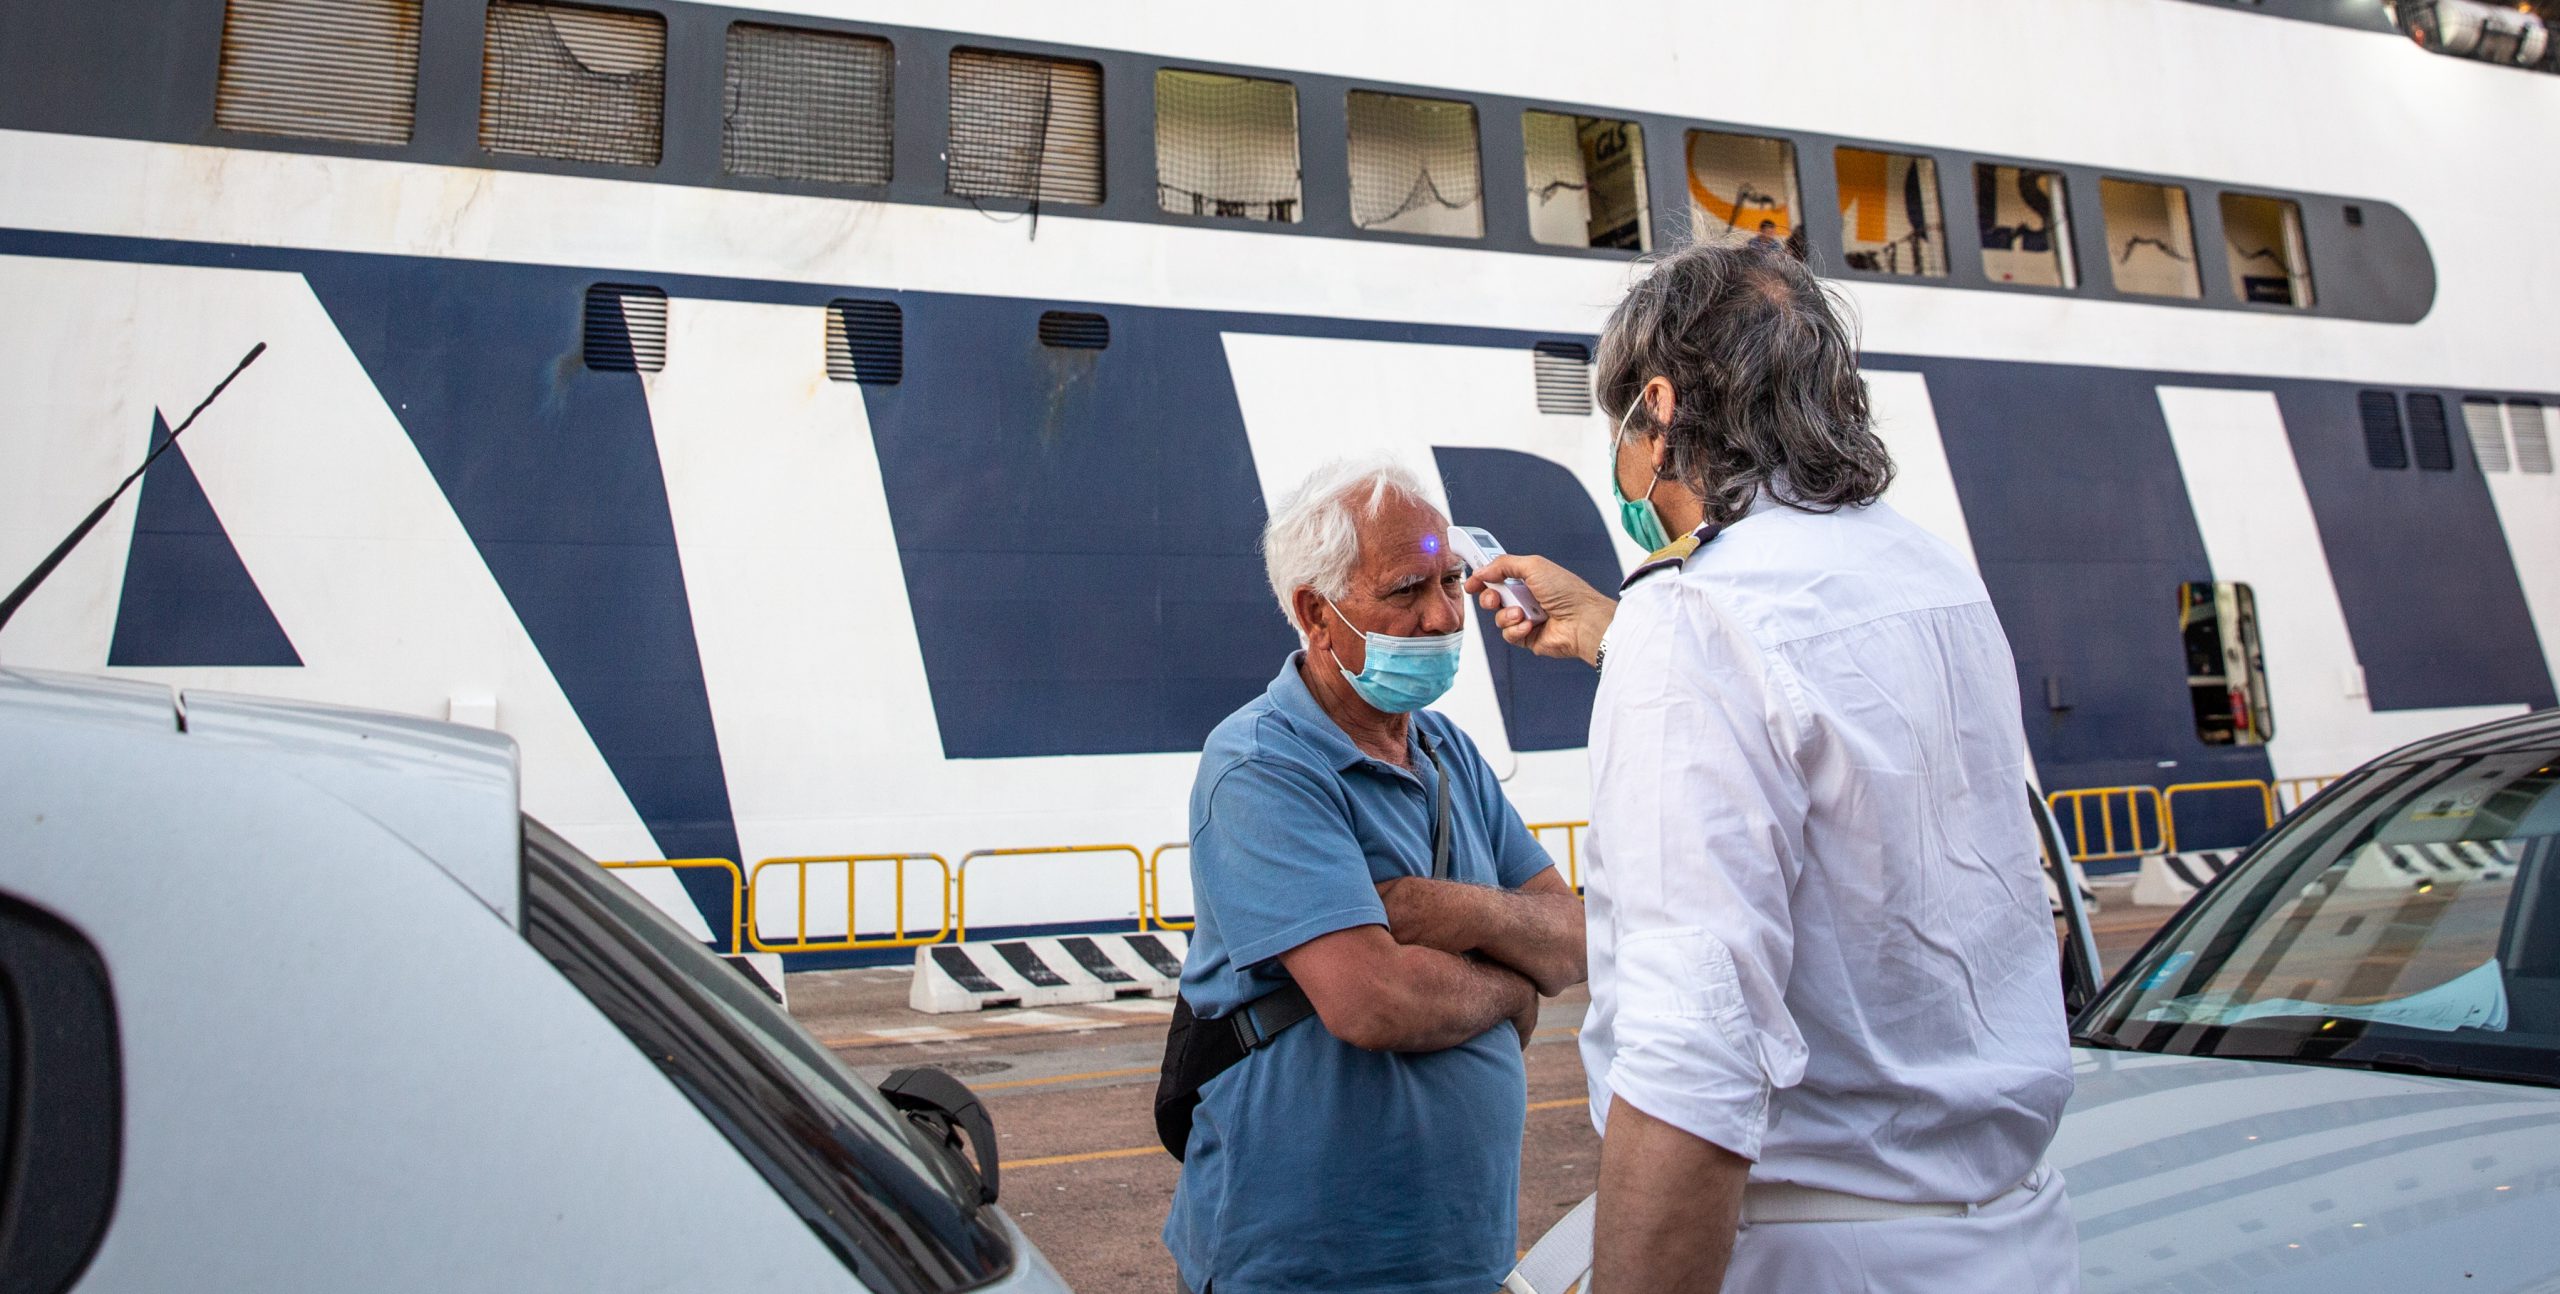 Un membro dell'equipaggio di un traghetto della Grimaldi Lines misura la temperatura a un passeggero prima dell'imbarco. Olbia, 8 luglio 2020 (Max Cavallari/Getty Images)